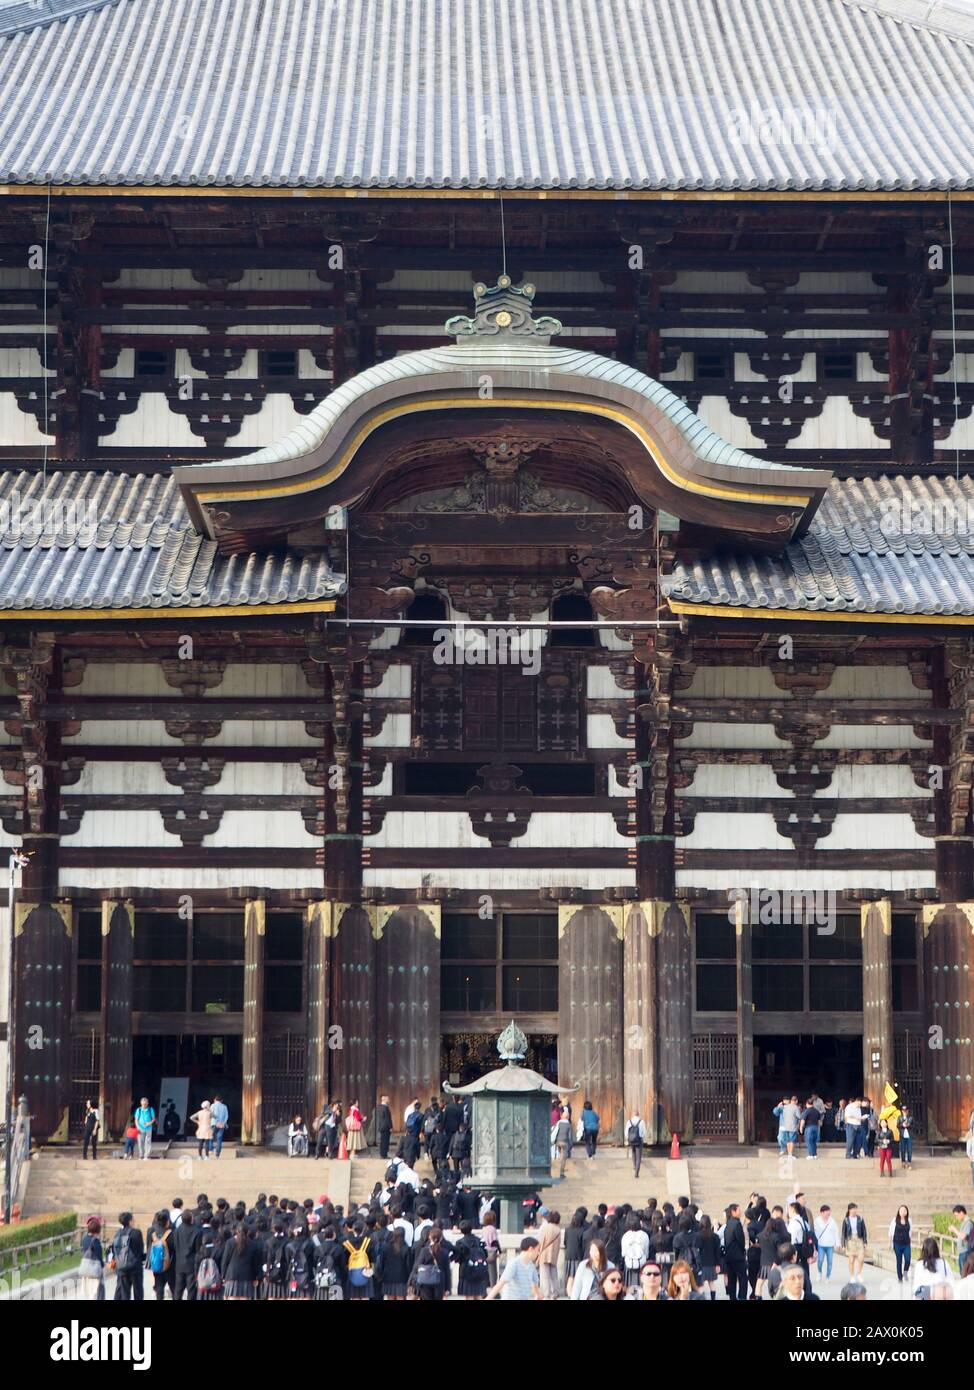 Nara, Giappone - 15 ottobre 2018: Grande Buddha Hall (Daibutsuden) di Tōdai-ji (Tempio Grande Orientale), un tempio buddista complesso nella città di Nara, Giappone. Foto Stock